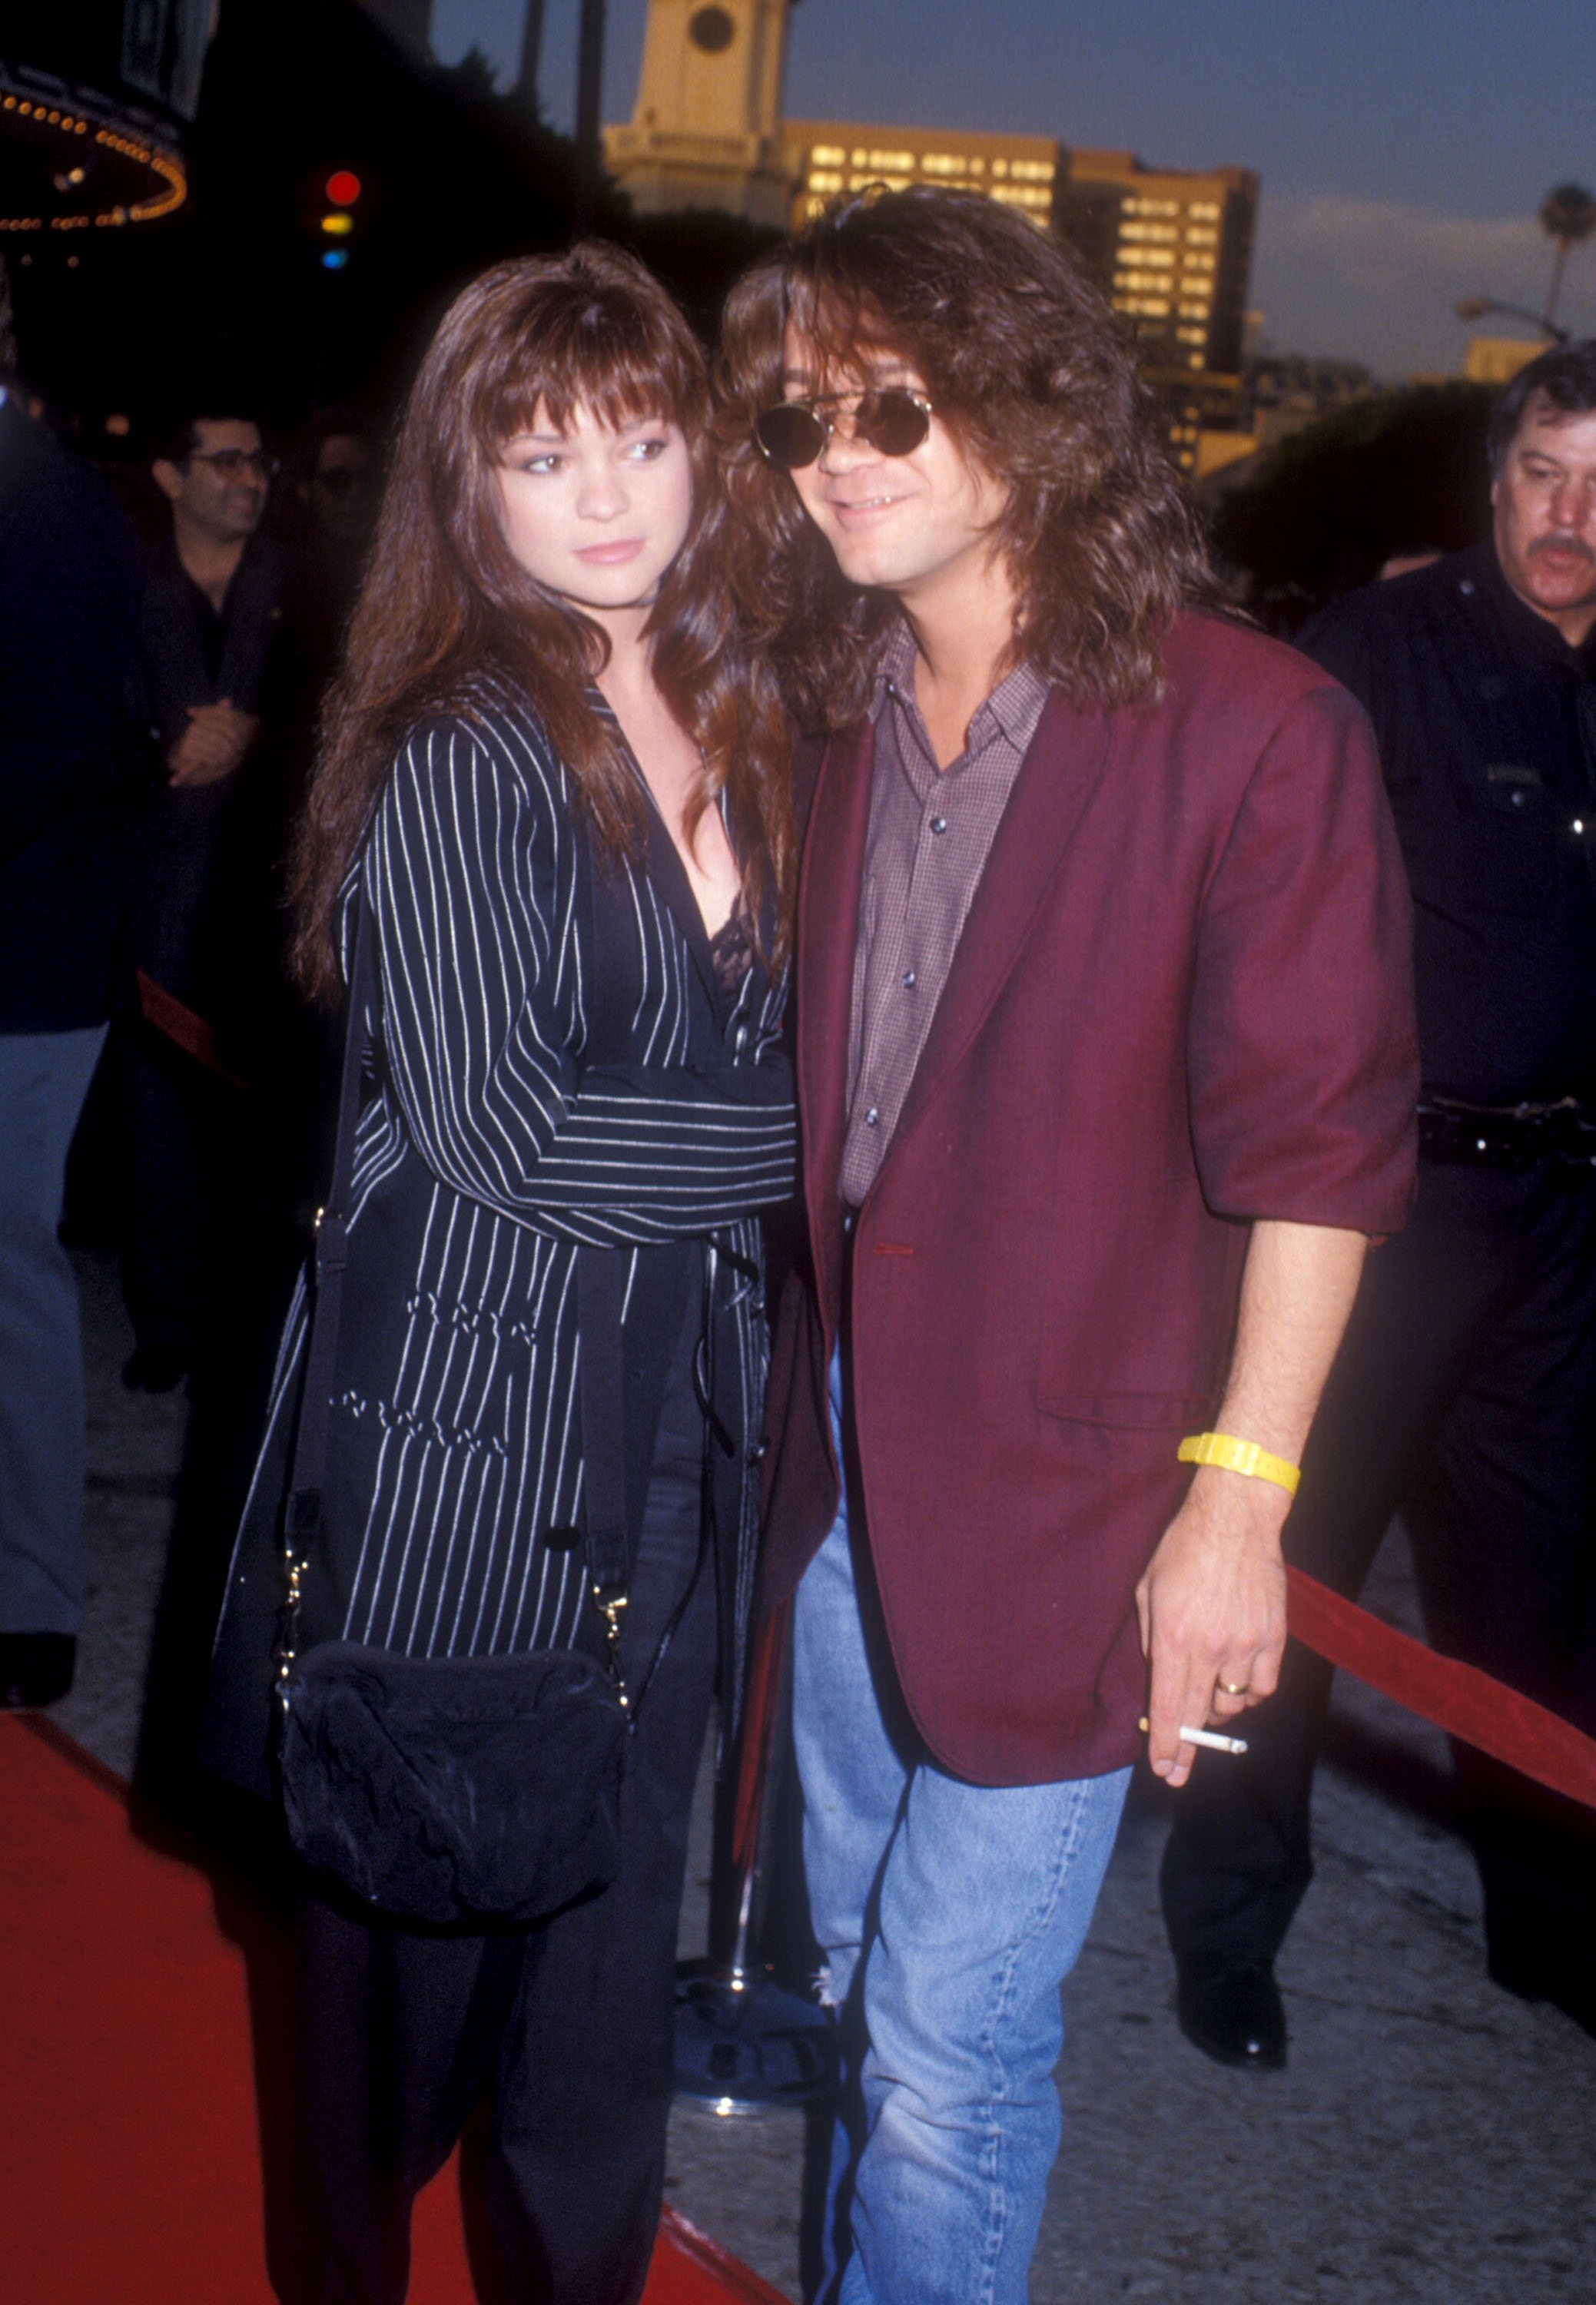 Valerie Bertinelli and Eddie Van Halen during the "Batman" Los Angeles Premiere in Westwood, California on June 19, 1989 | Source: Getty Images